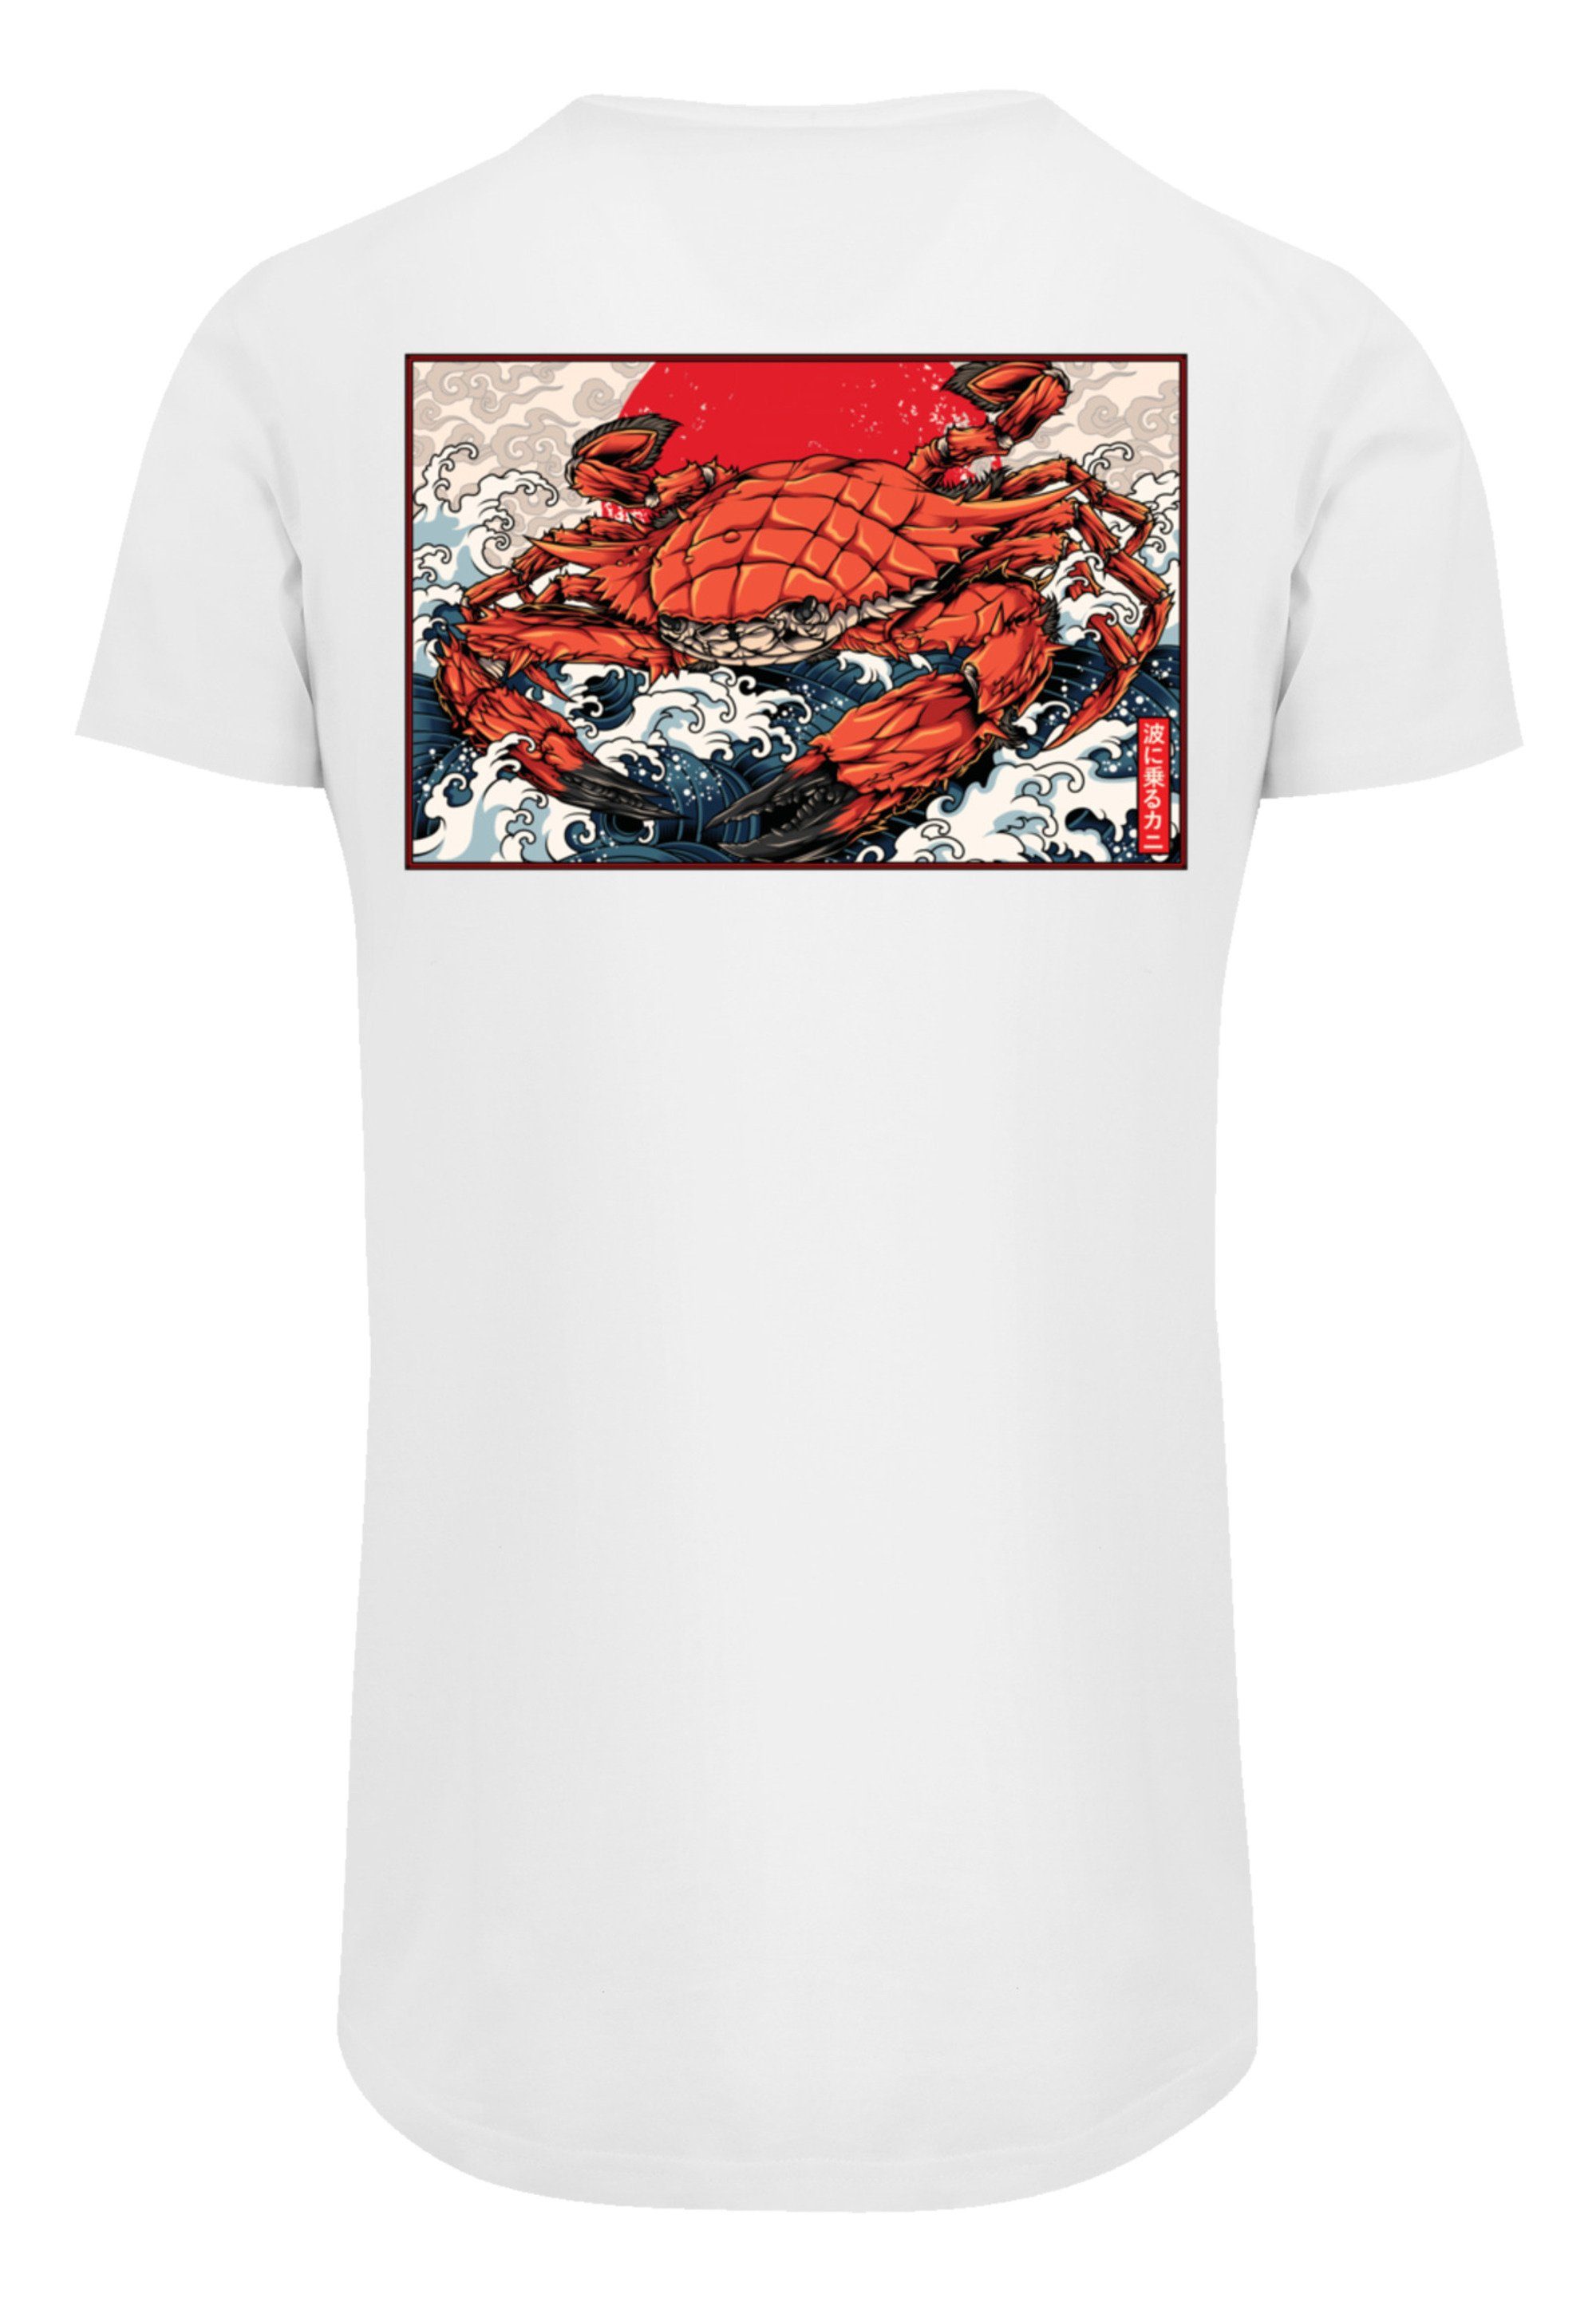 T-Shirt mit Print, weicher Welle hohem Japan Baumwollstoff Tragekomfort Sehr F4NT4STIC Crab